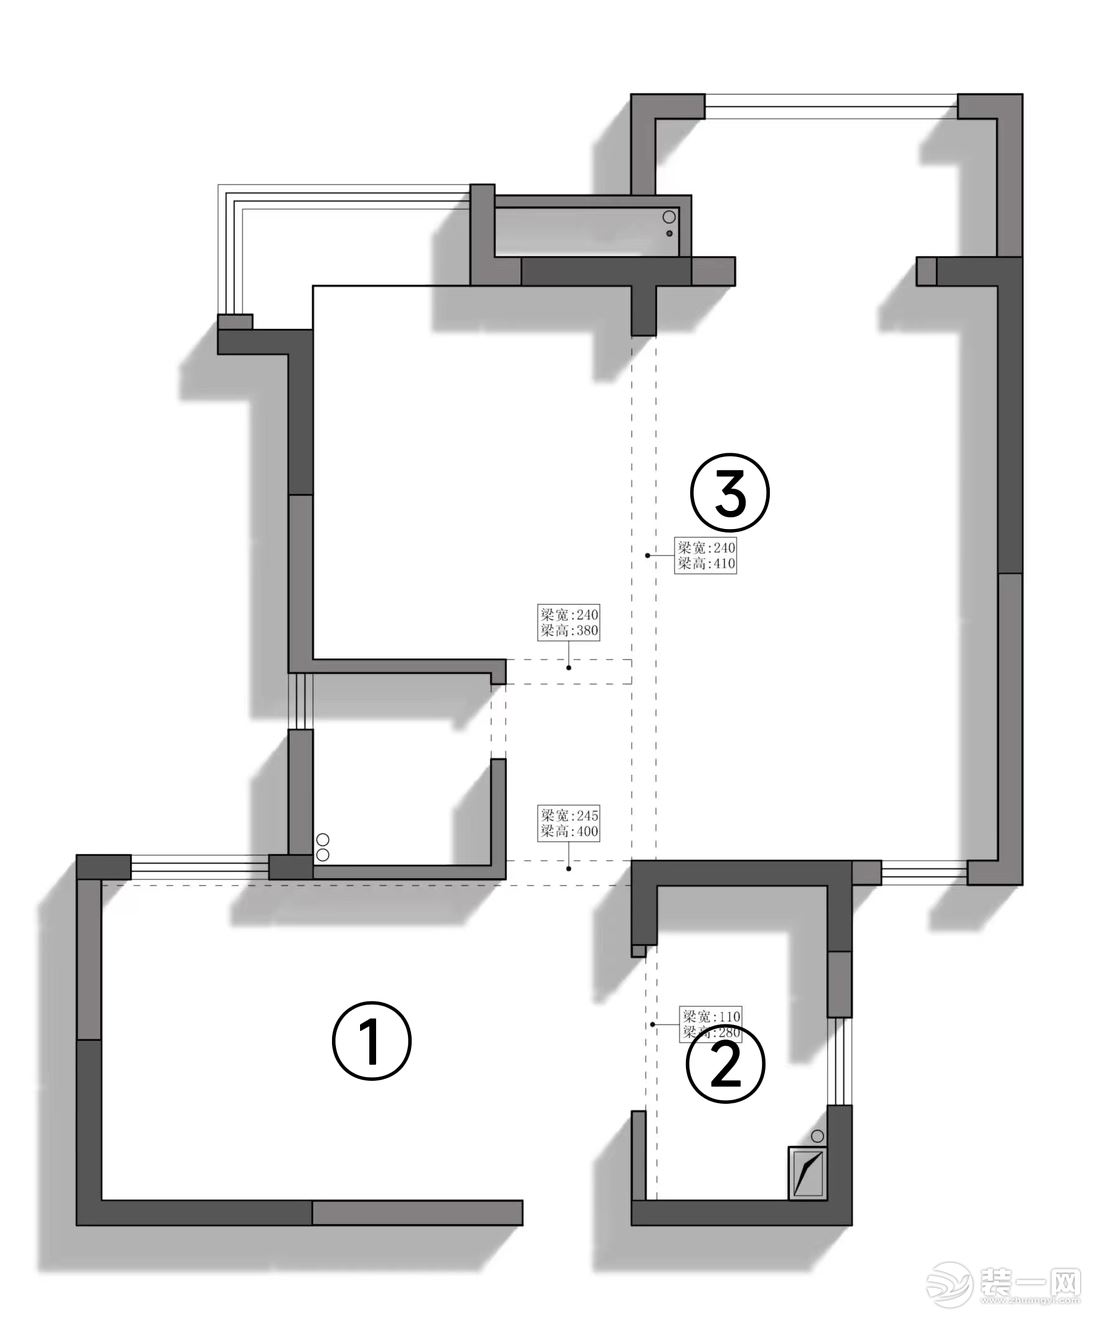 改造前： ①入戶餐廳和次臥室在一起較擁擠，且沒有玄關。 ②原始廚房只有1.68*3.1的空間，比較小